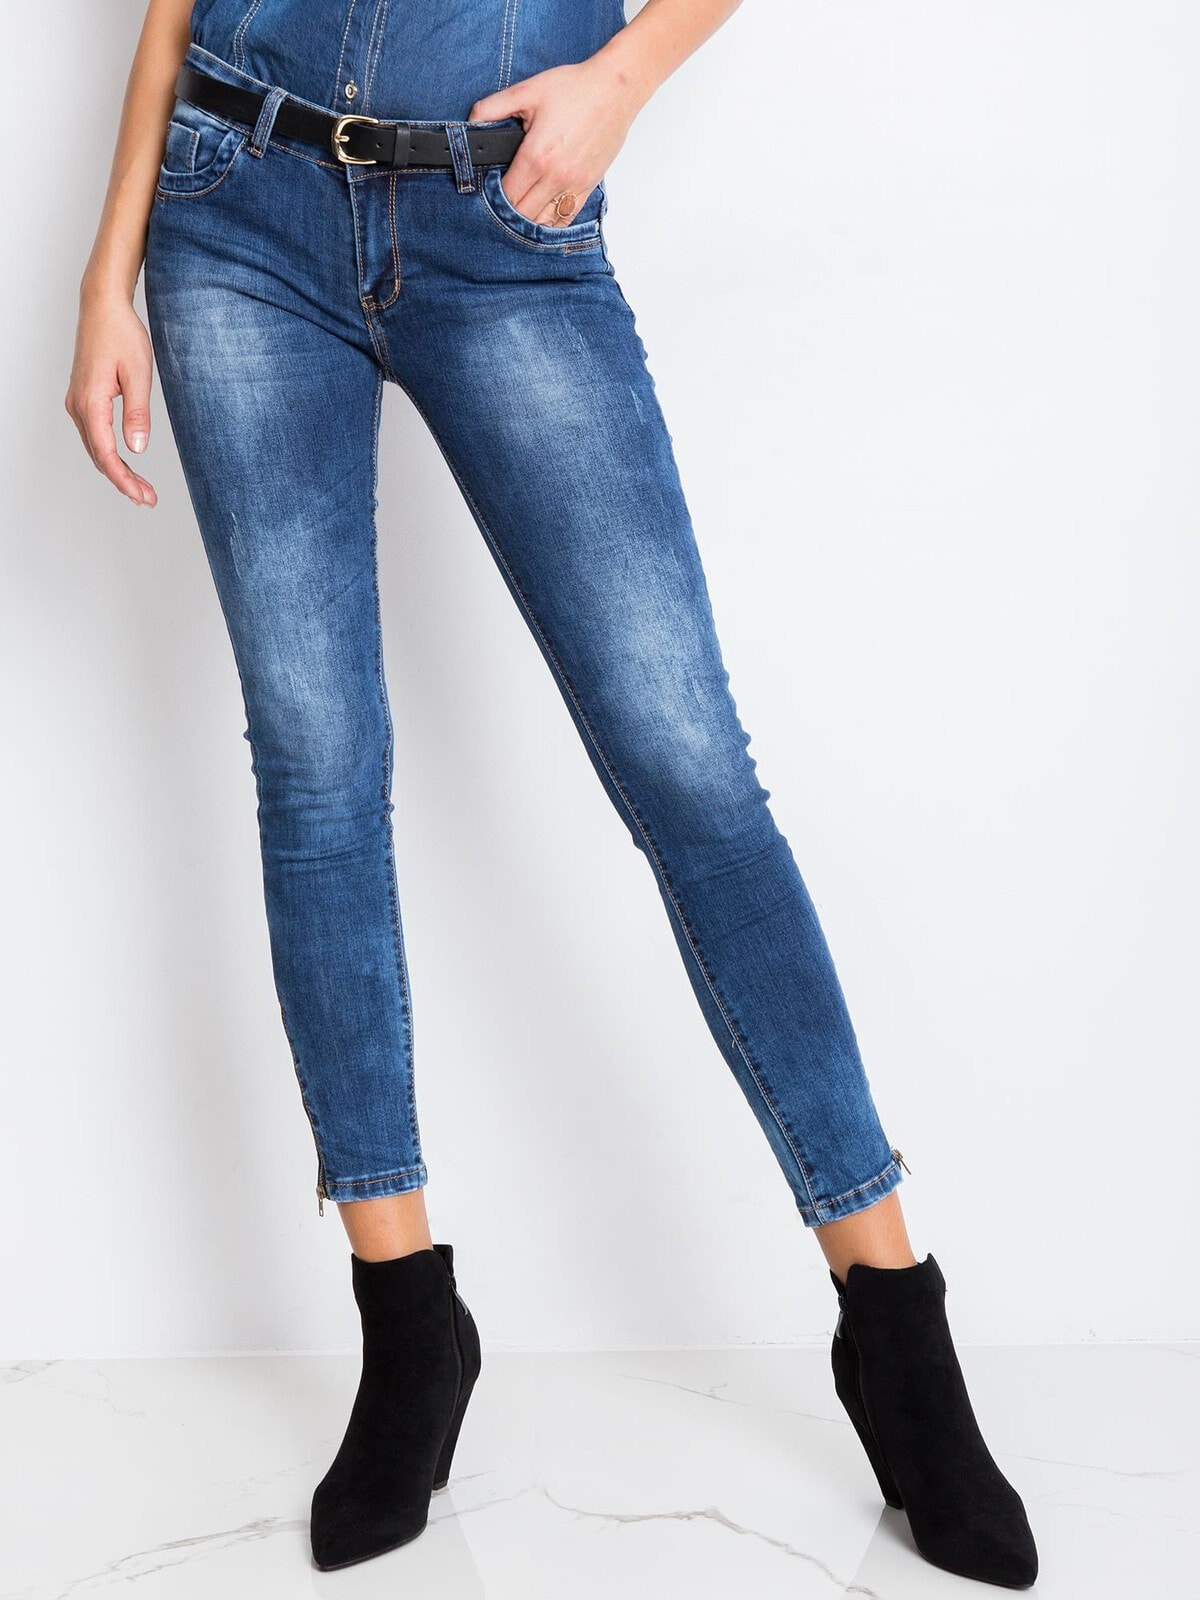 Женские джинсы  скинни с низкой посадкой укороченные синие  Factory Price